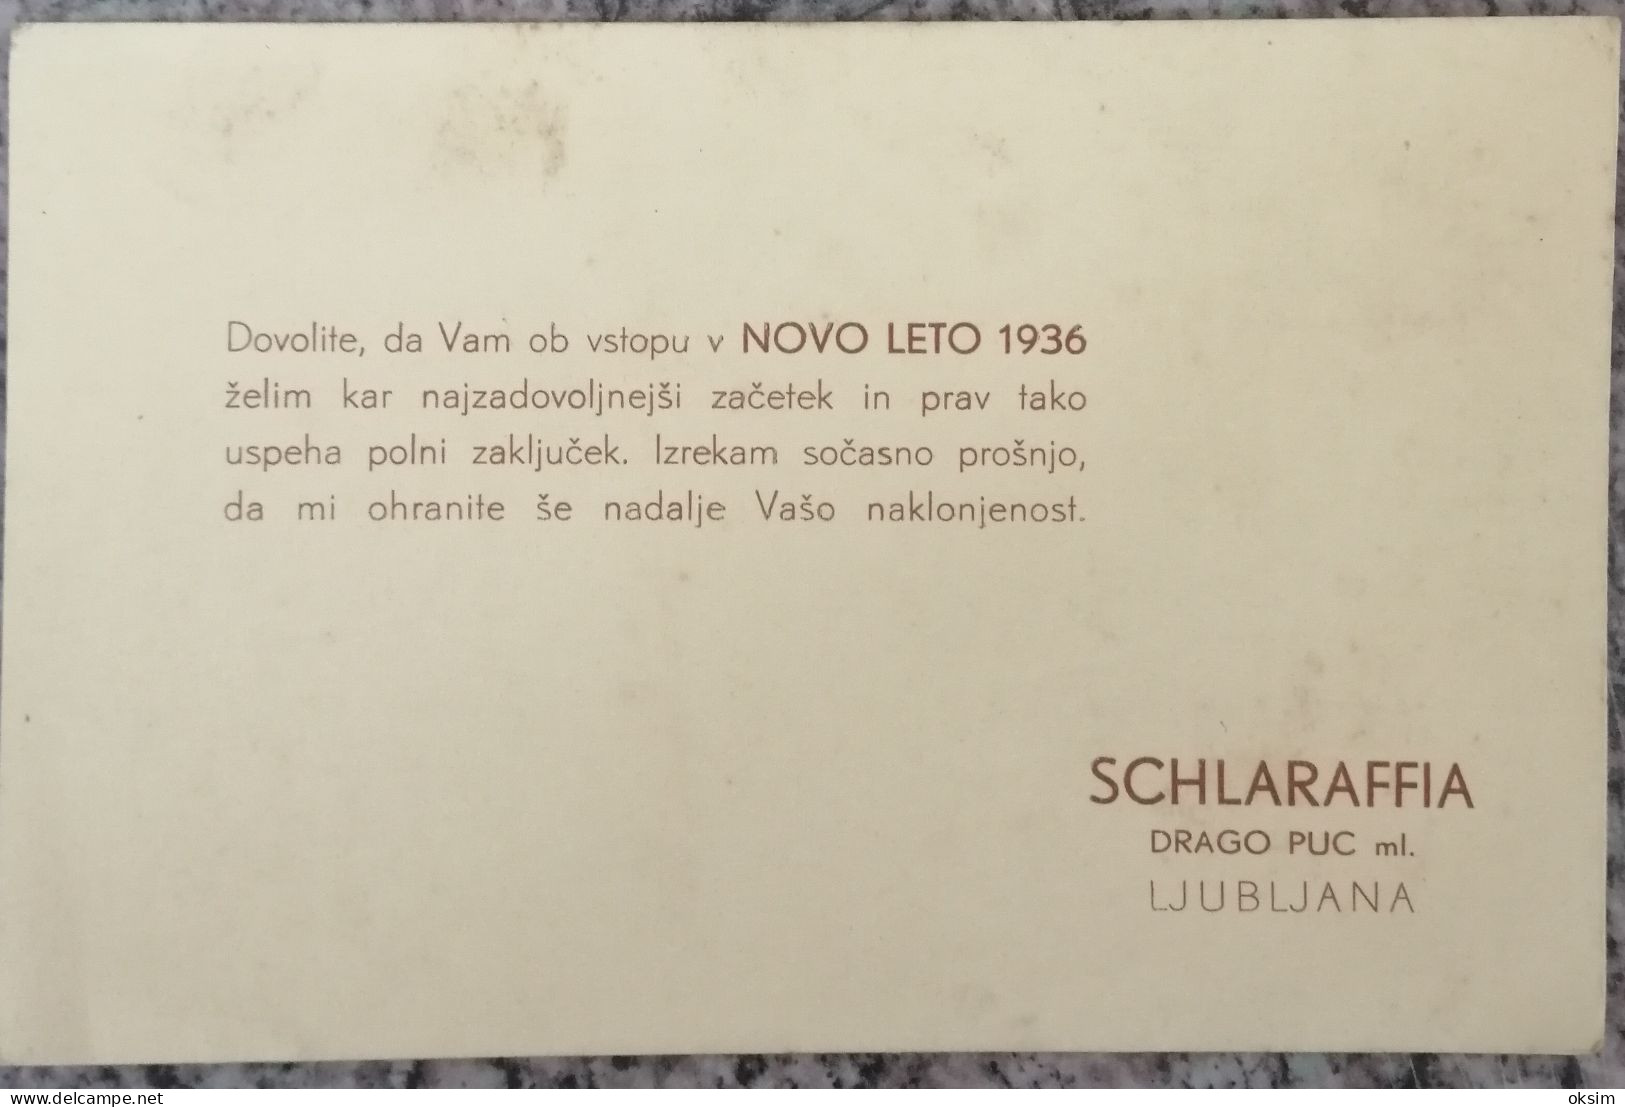 SCHLARAFFIA, DRAGO PUC, LJUBLJANA, NOVO LETNO VOŠČILO!!!, 1936 - Slowenien